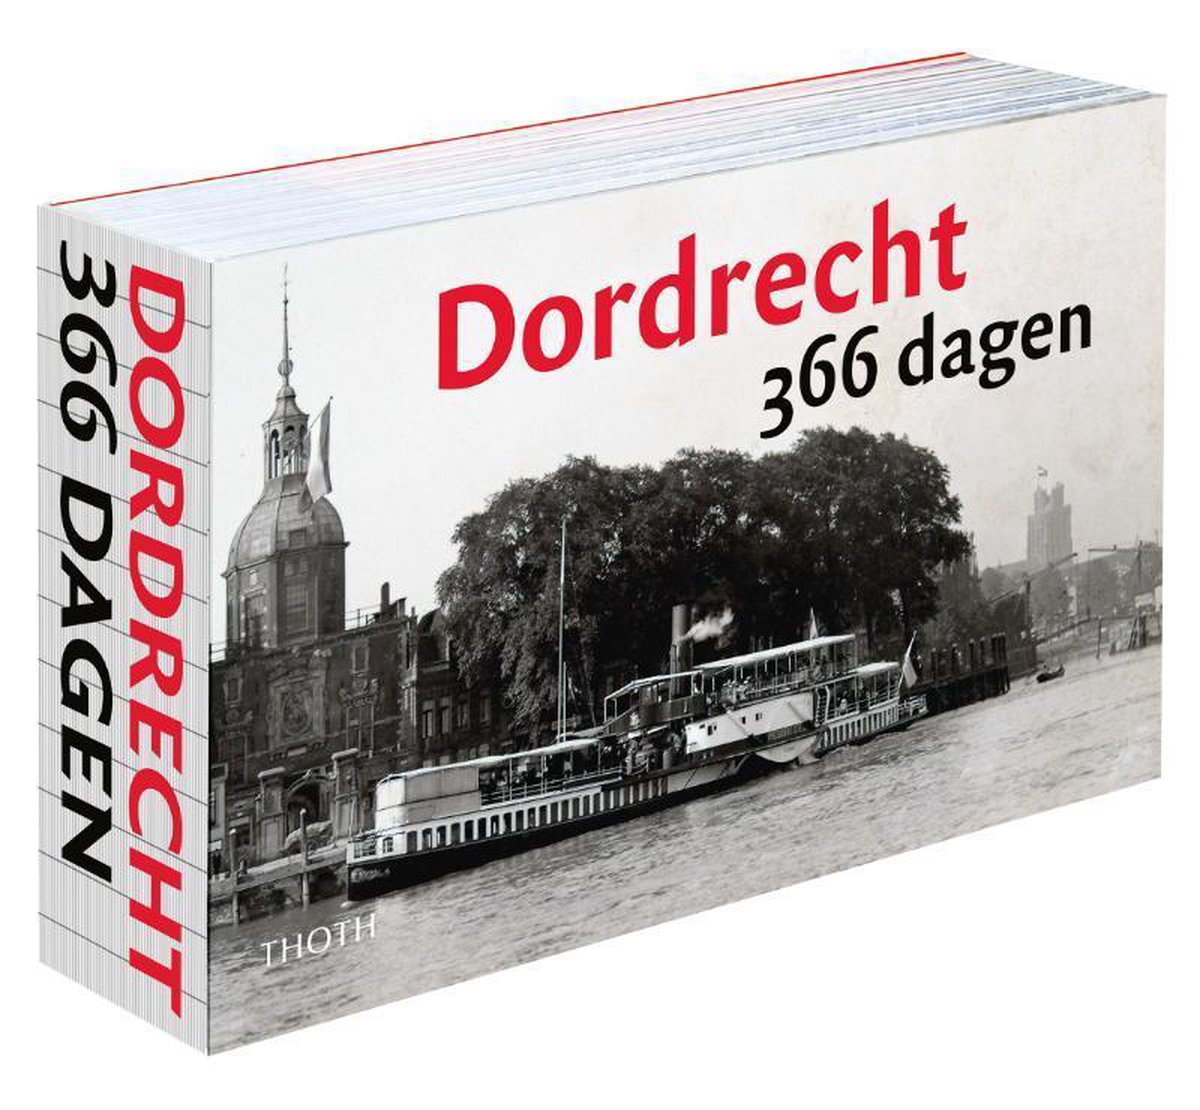 Dordrecht 366 dagen - Sander van Bladel